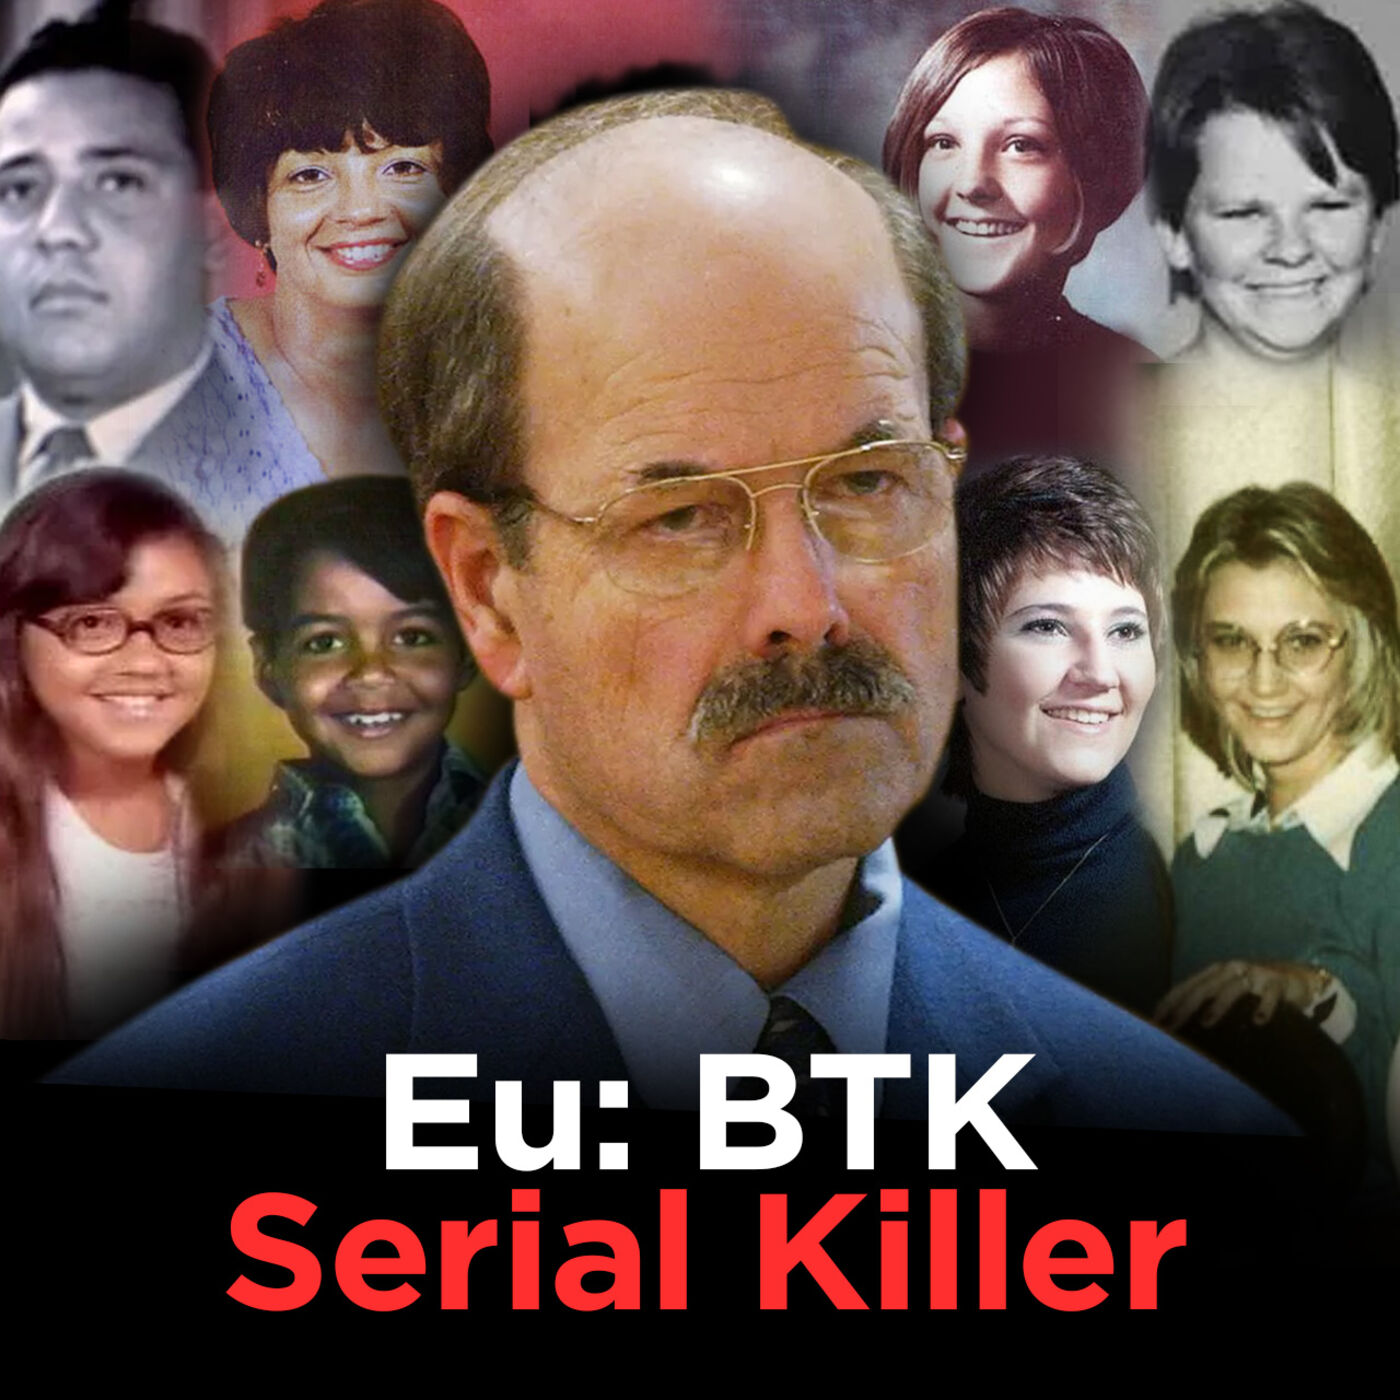 Eu: BTK (As confissões de um Serial Killer) [Ep 02]